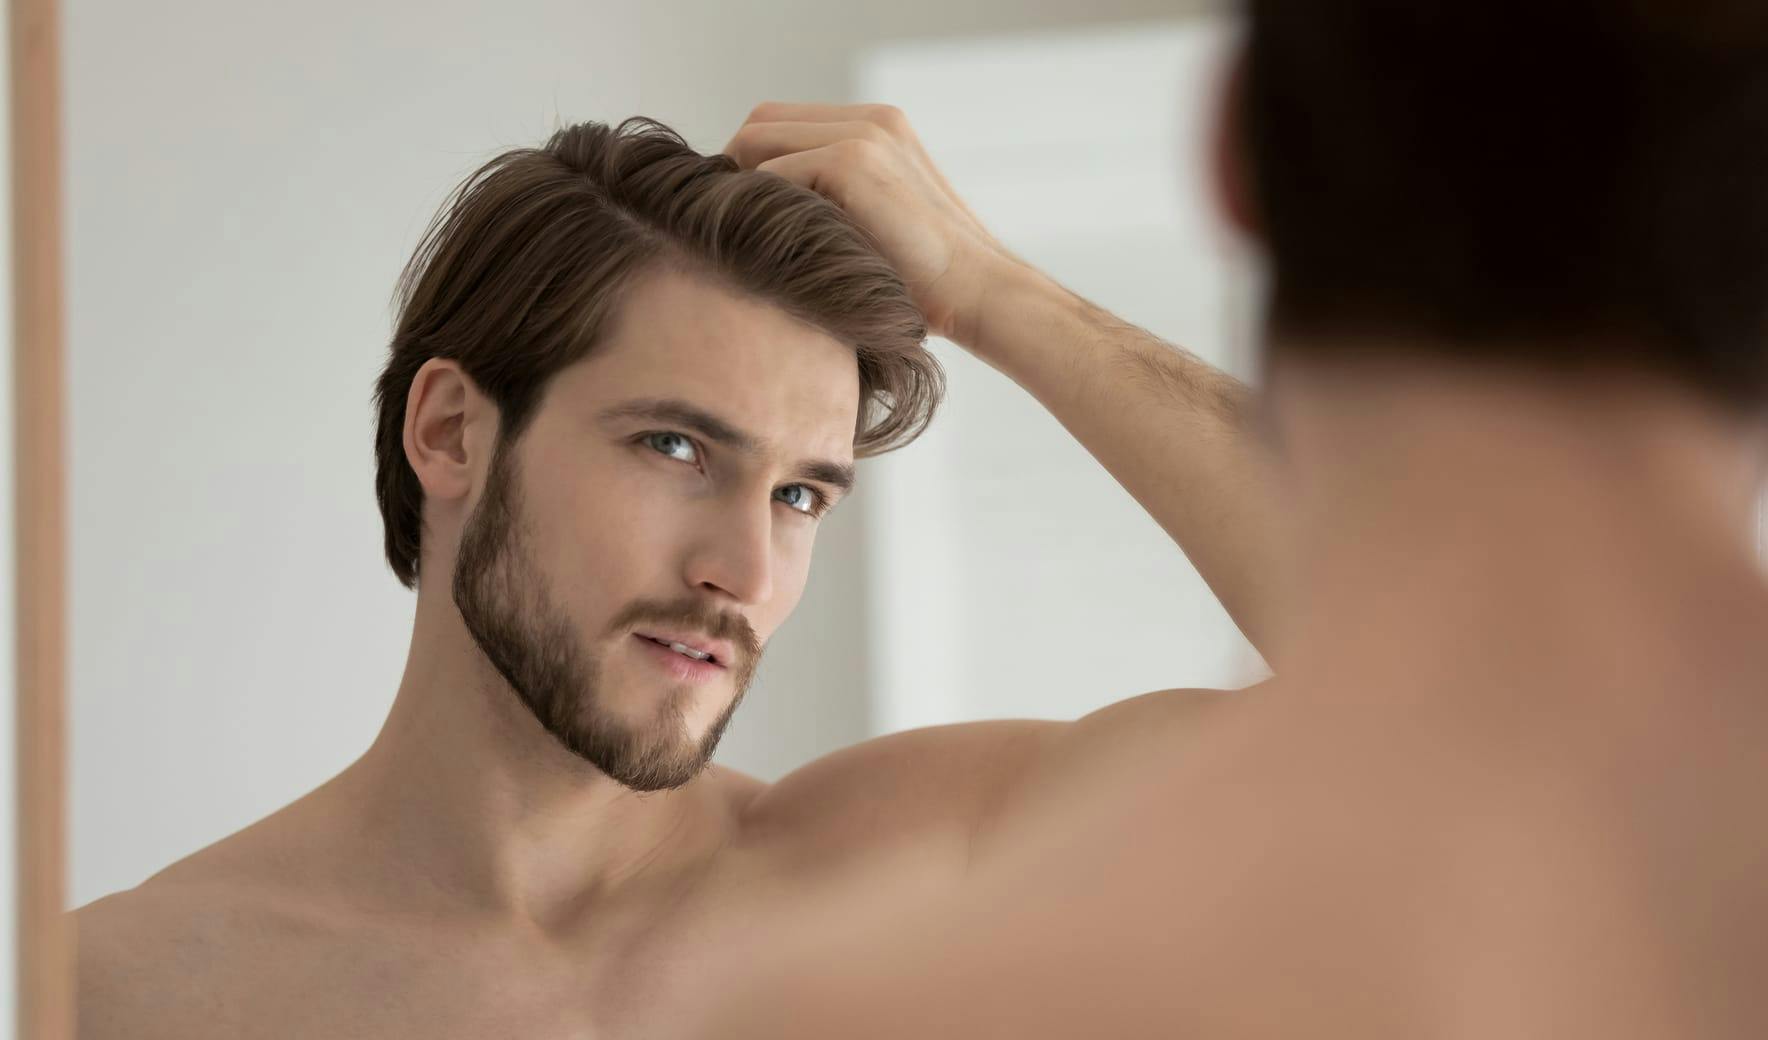 man looking in mirror rubbing hair